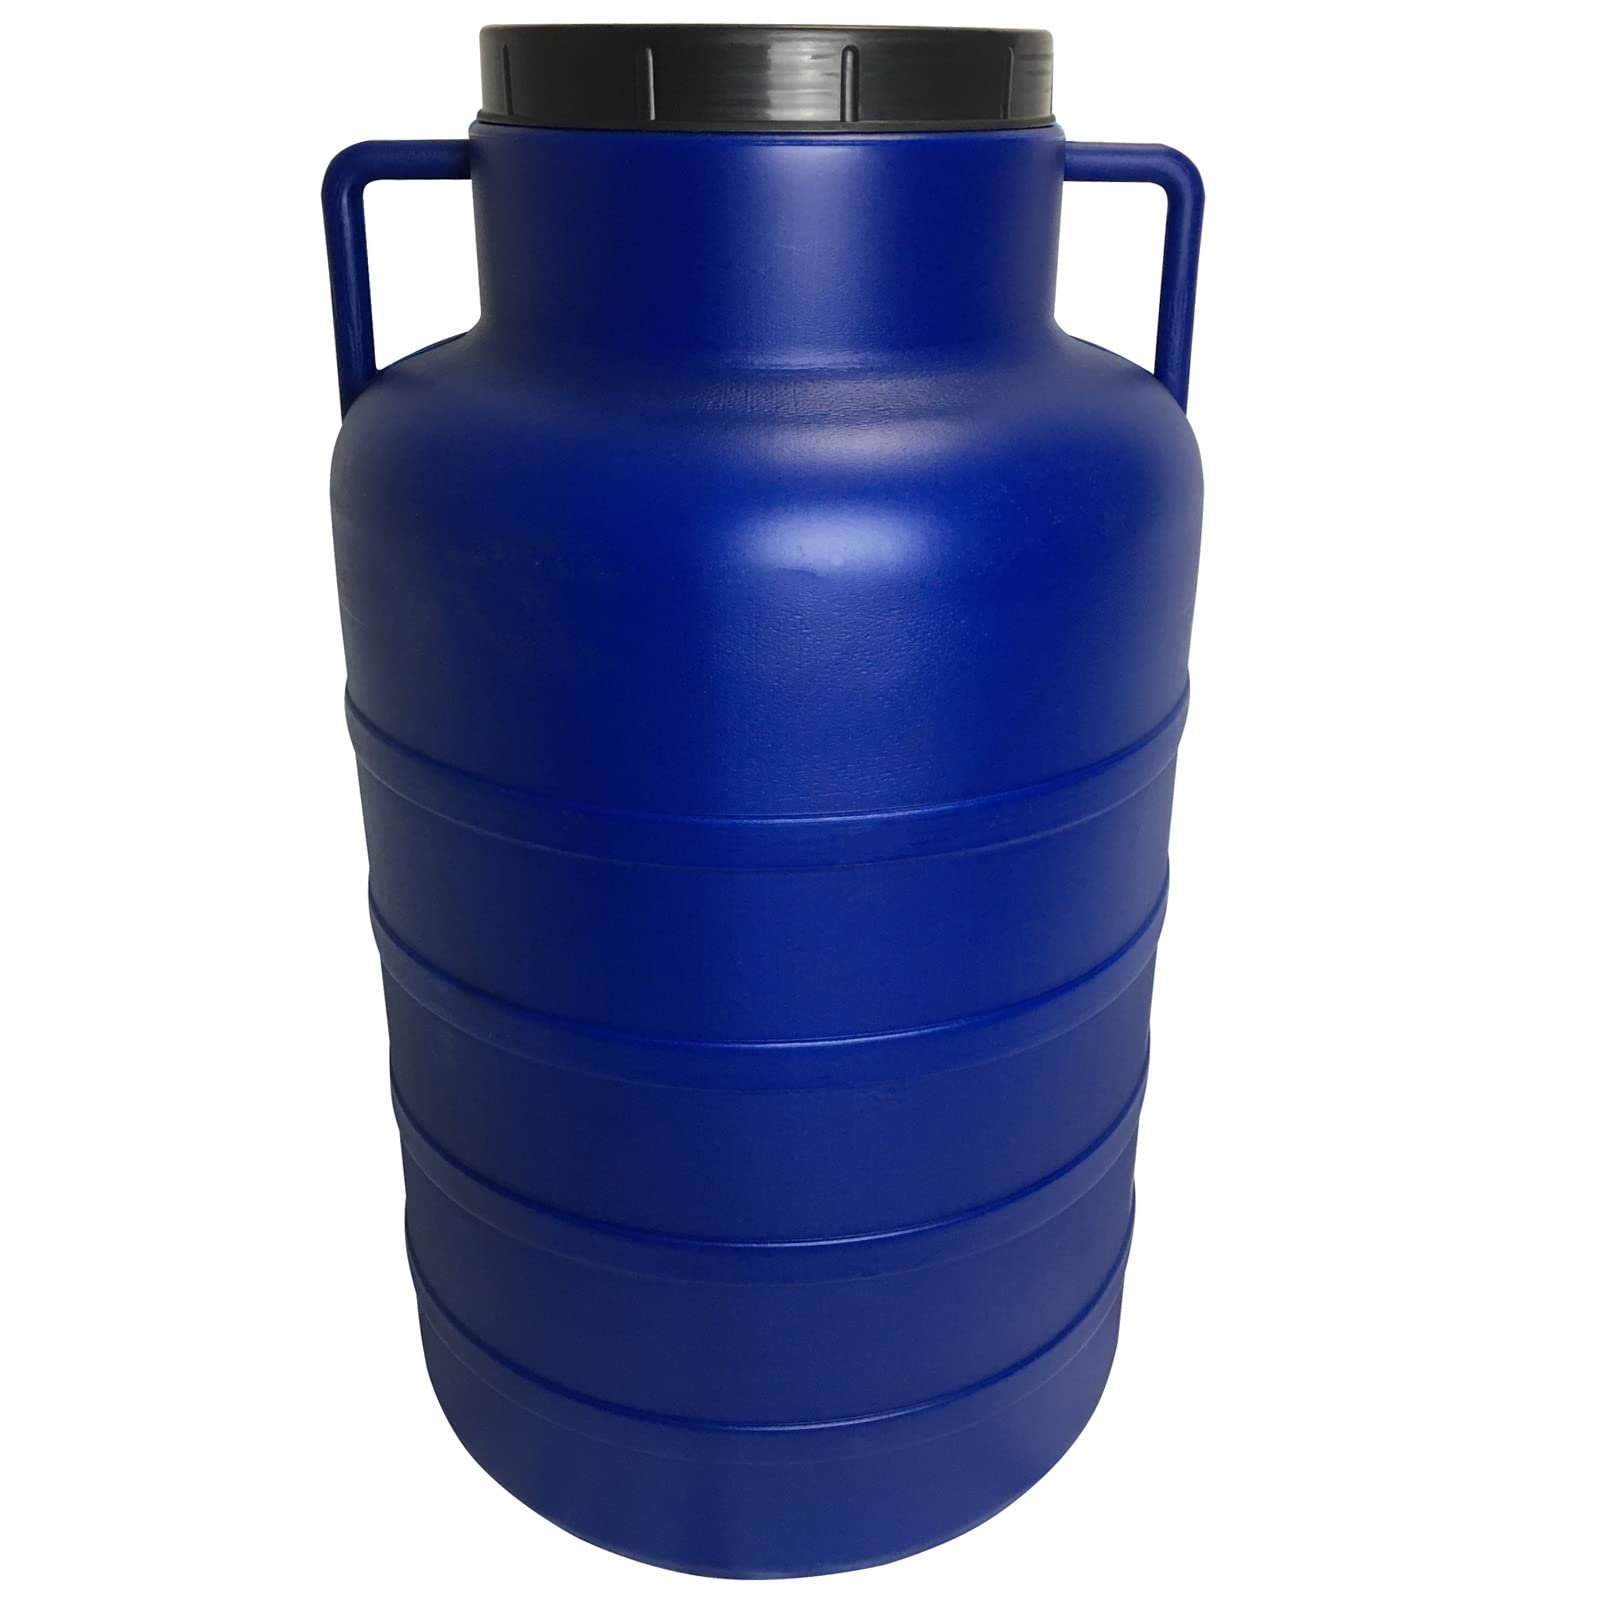 BAUPROFI Weithals-Fass 60 Liter blau Öffnung 19 cm mit Deckel und Griffen (lebensmittelecht)